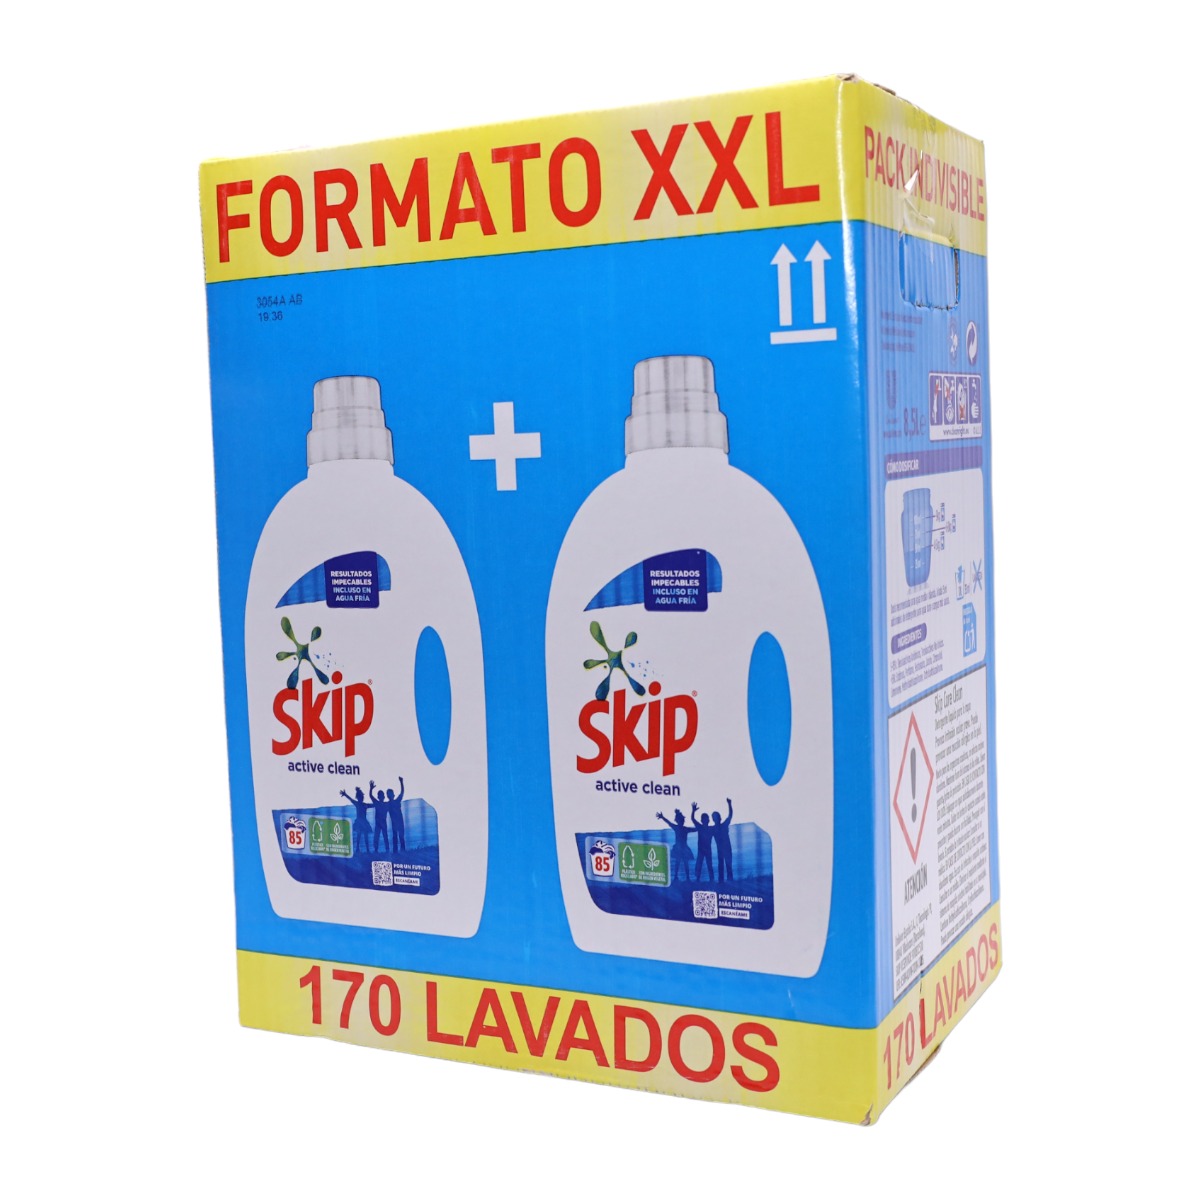 ARIEL All-in-One Pack de 2 bolsas de Detergente de Lavadora en 43